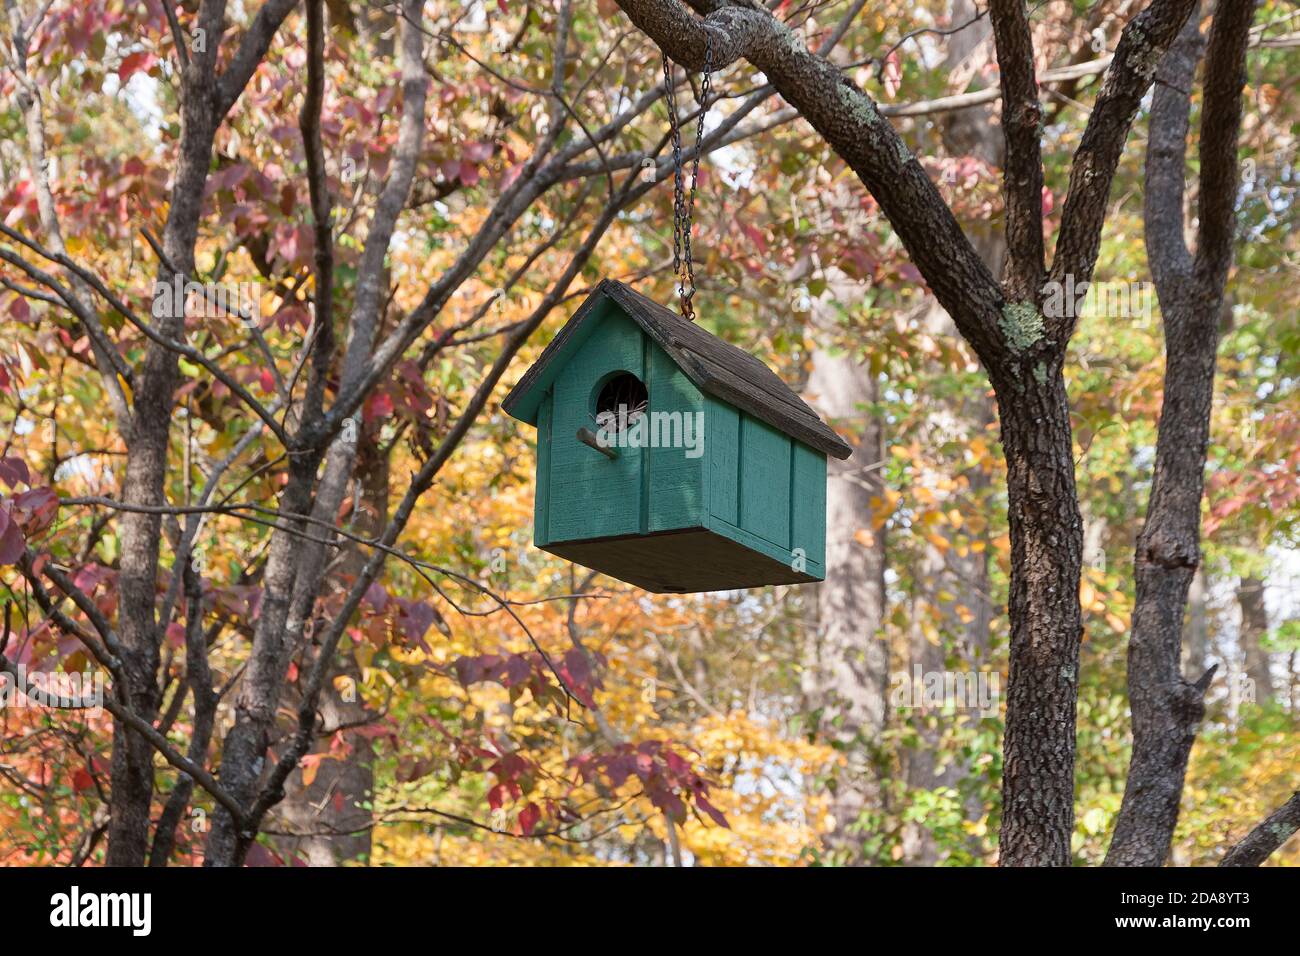 Coloratissima casa di uccelli in legno verde/teal fatta a mano appesa al ramo dell'albero durante la stagione autunnale. Foto Stock